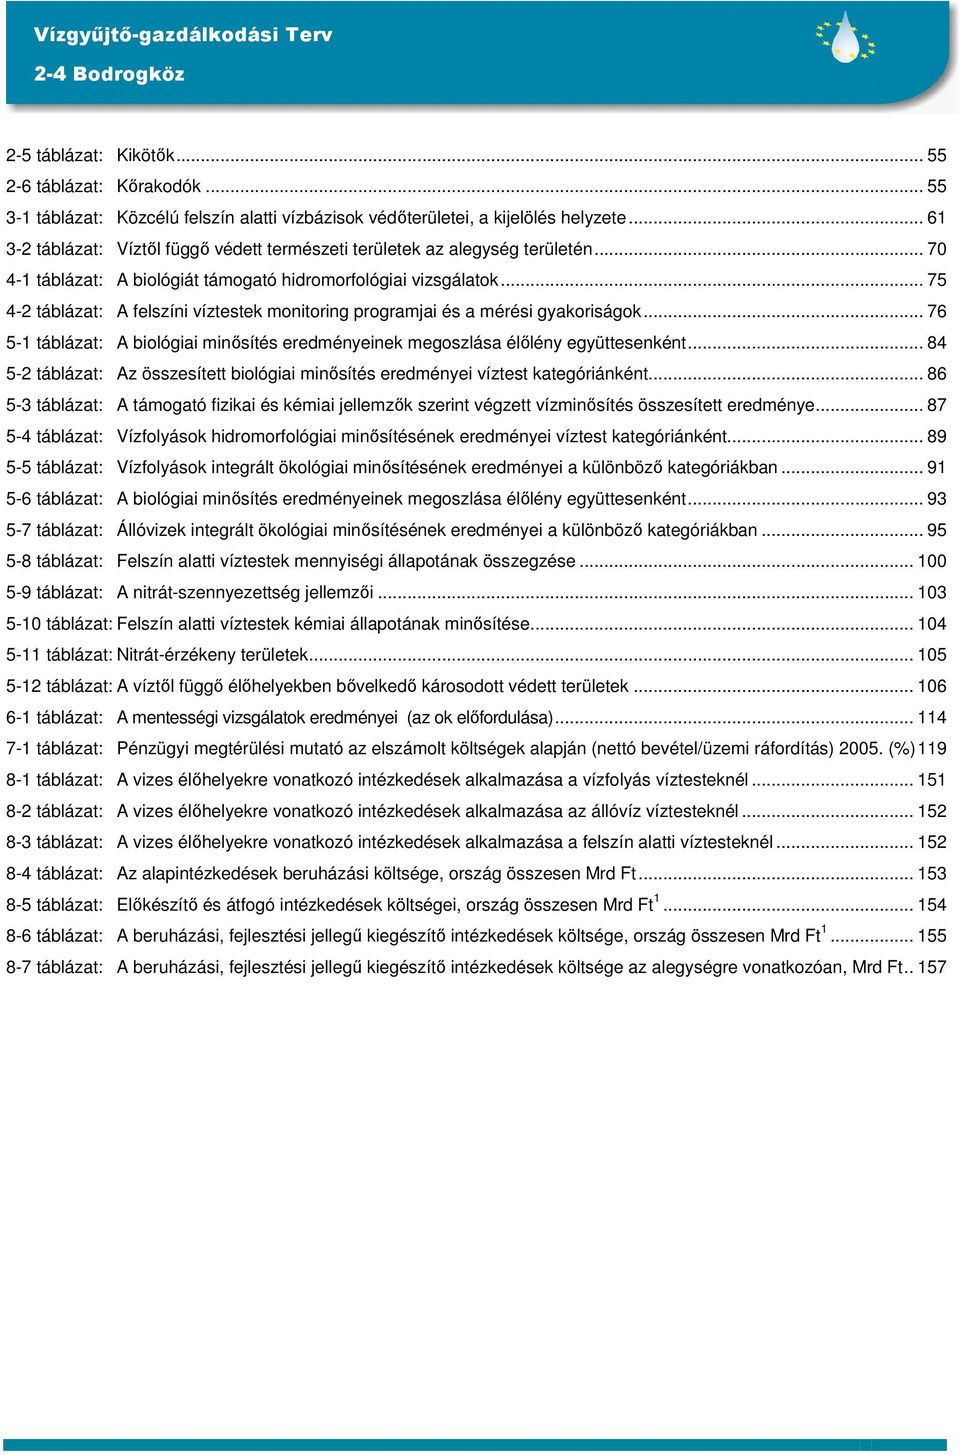 .. 75 4-2 táblázat: A felszíni víztestek monitoring programjai és a mérési gyakoriságok... 76 5-1 táblázat: A biológiai minősítés eredményeinek megoszlása élőlény együttesenként.